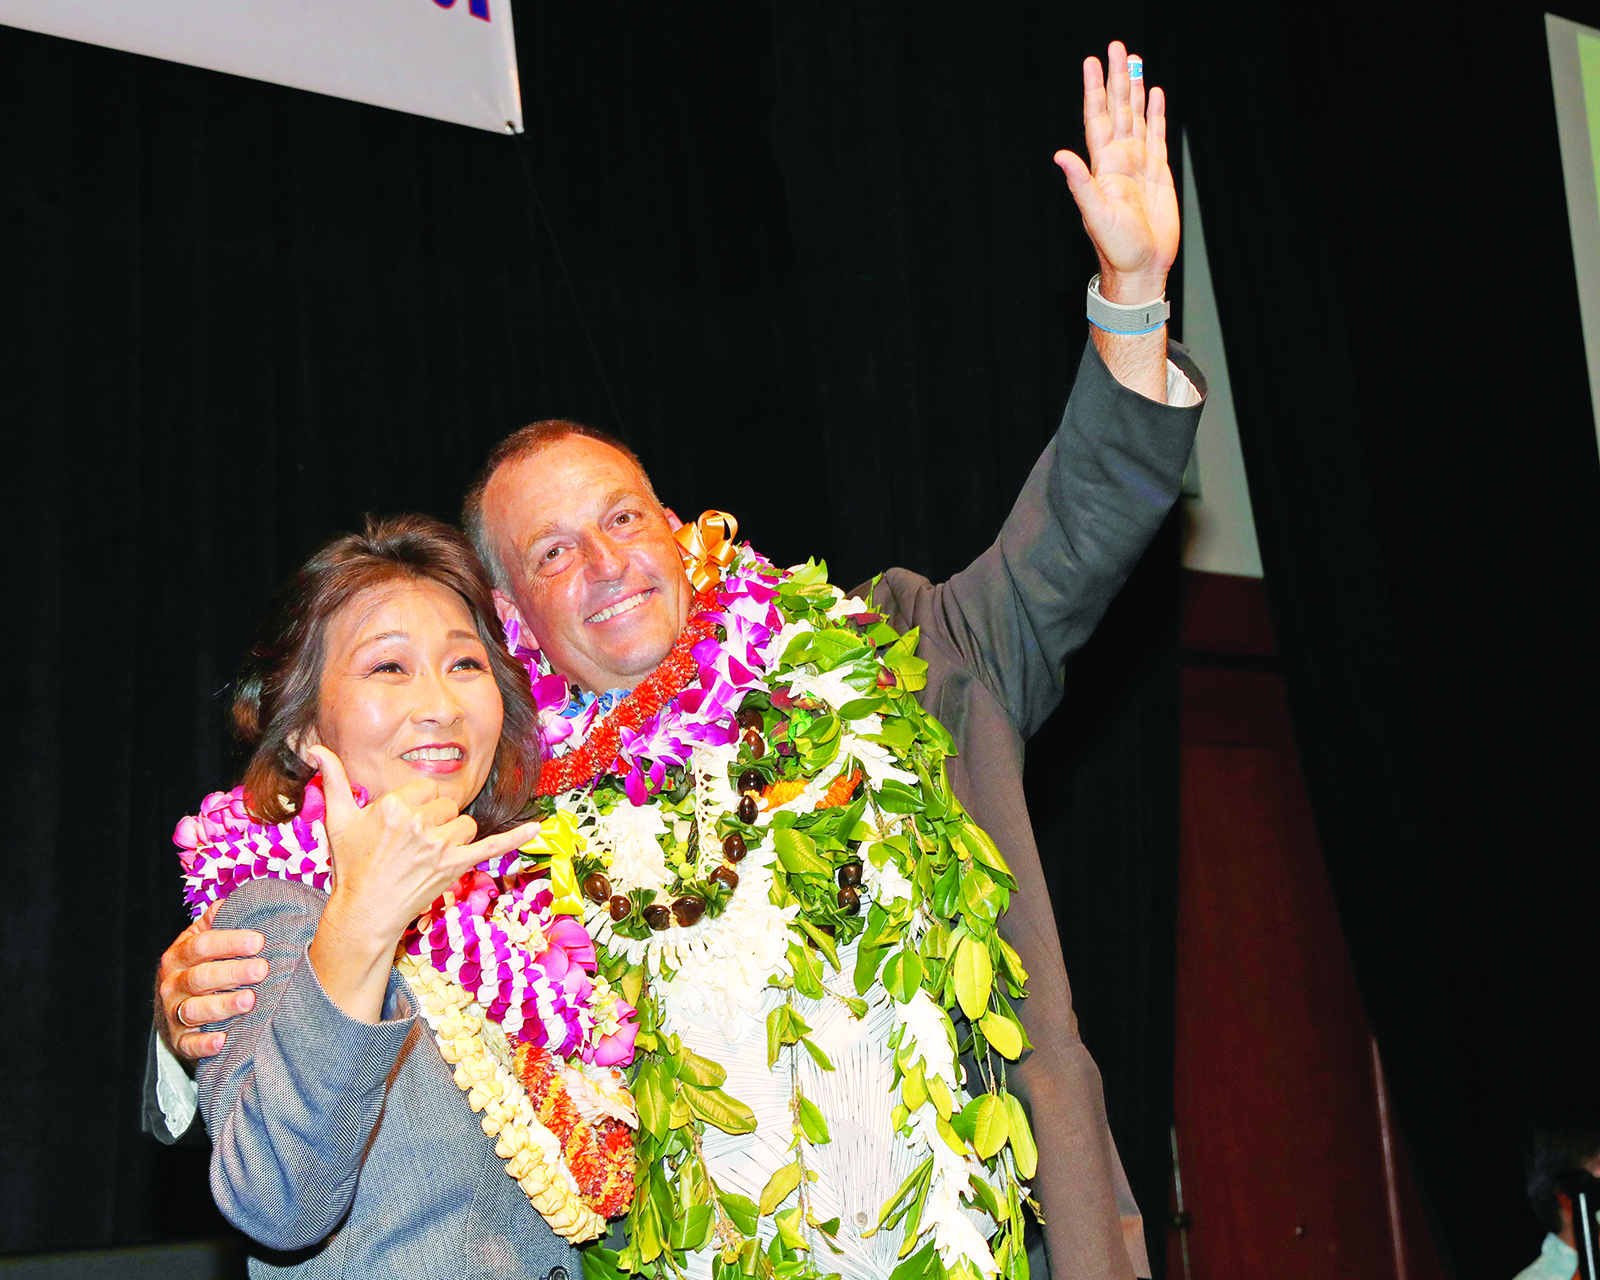 Democrat Green defeats Aiona to be Hawaii’s next governor